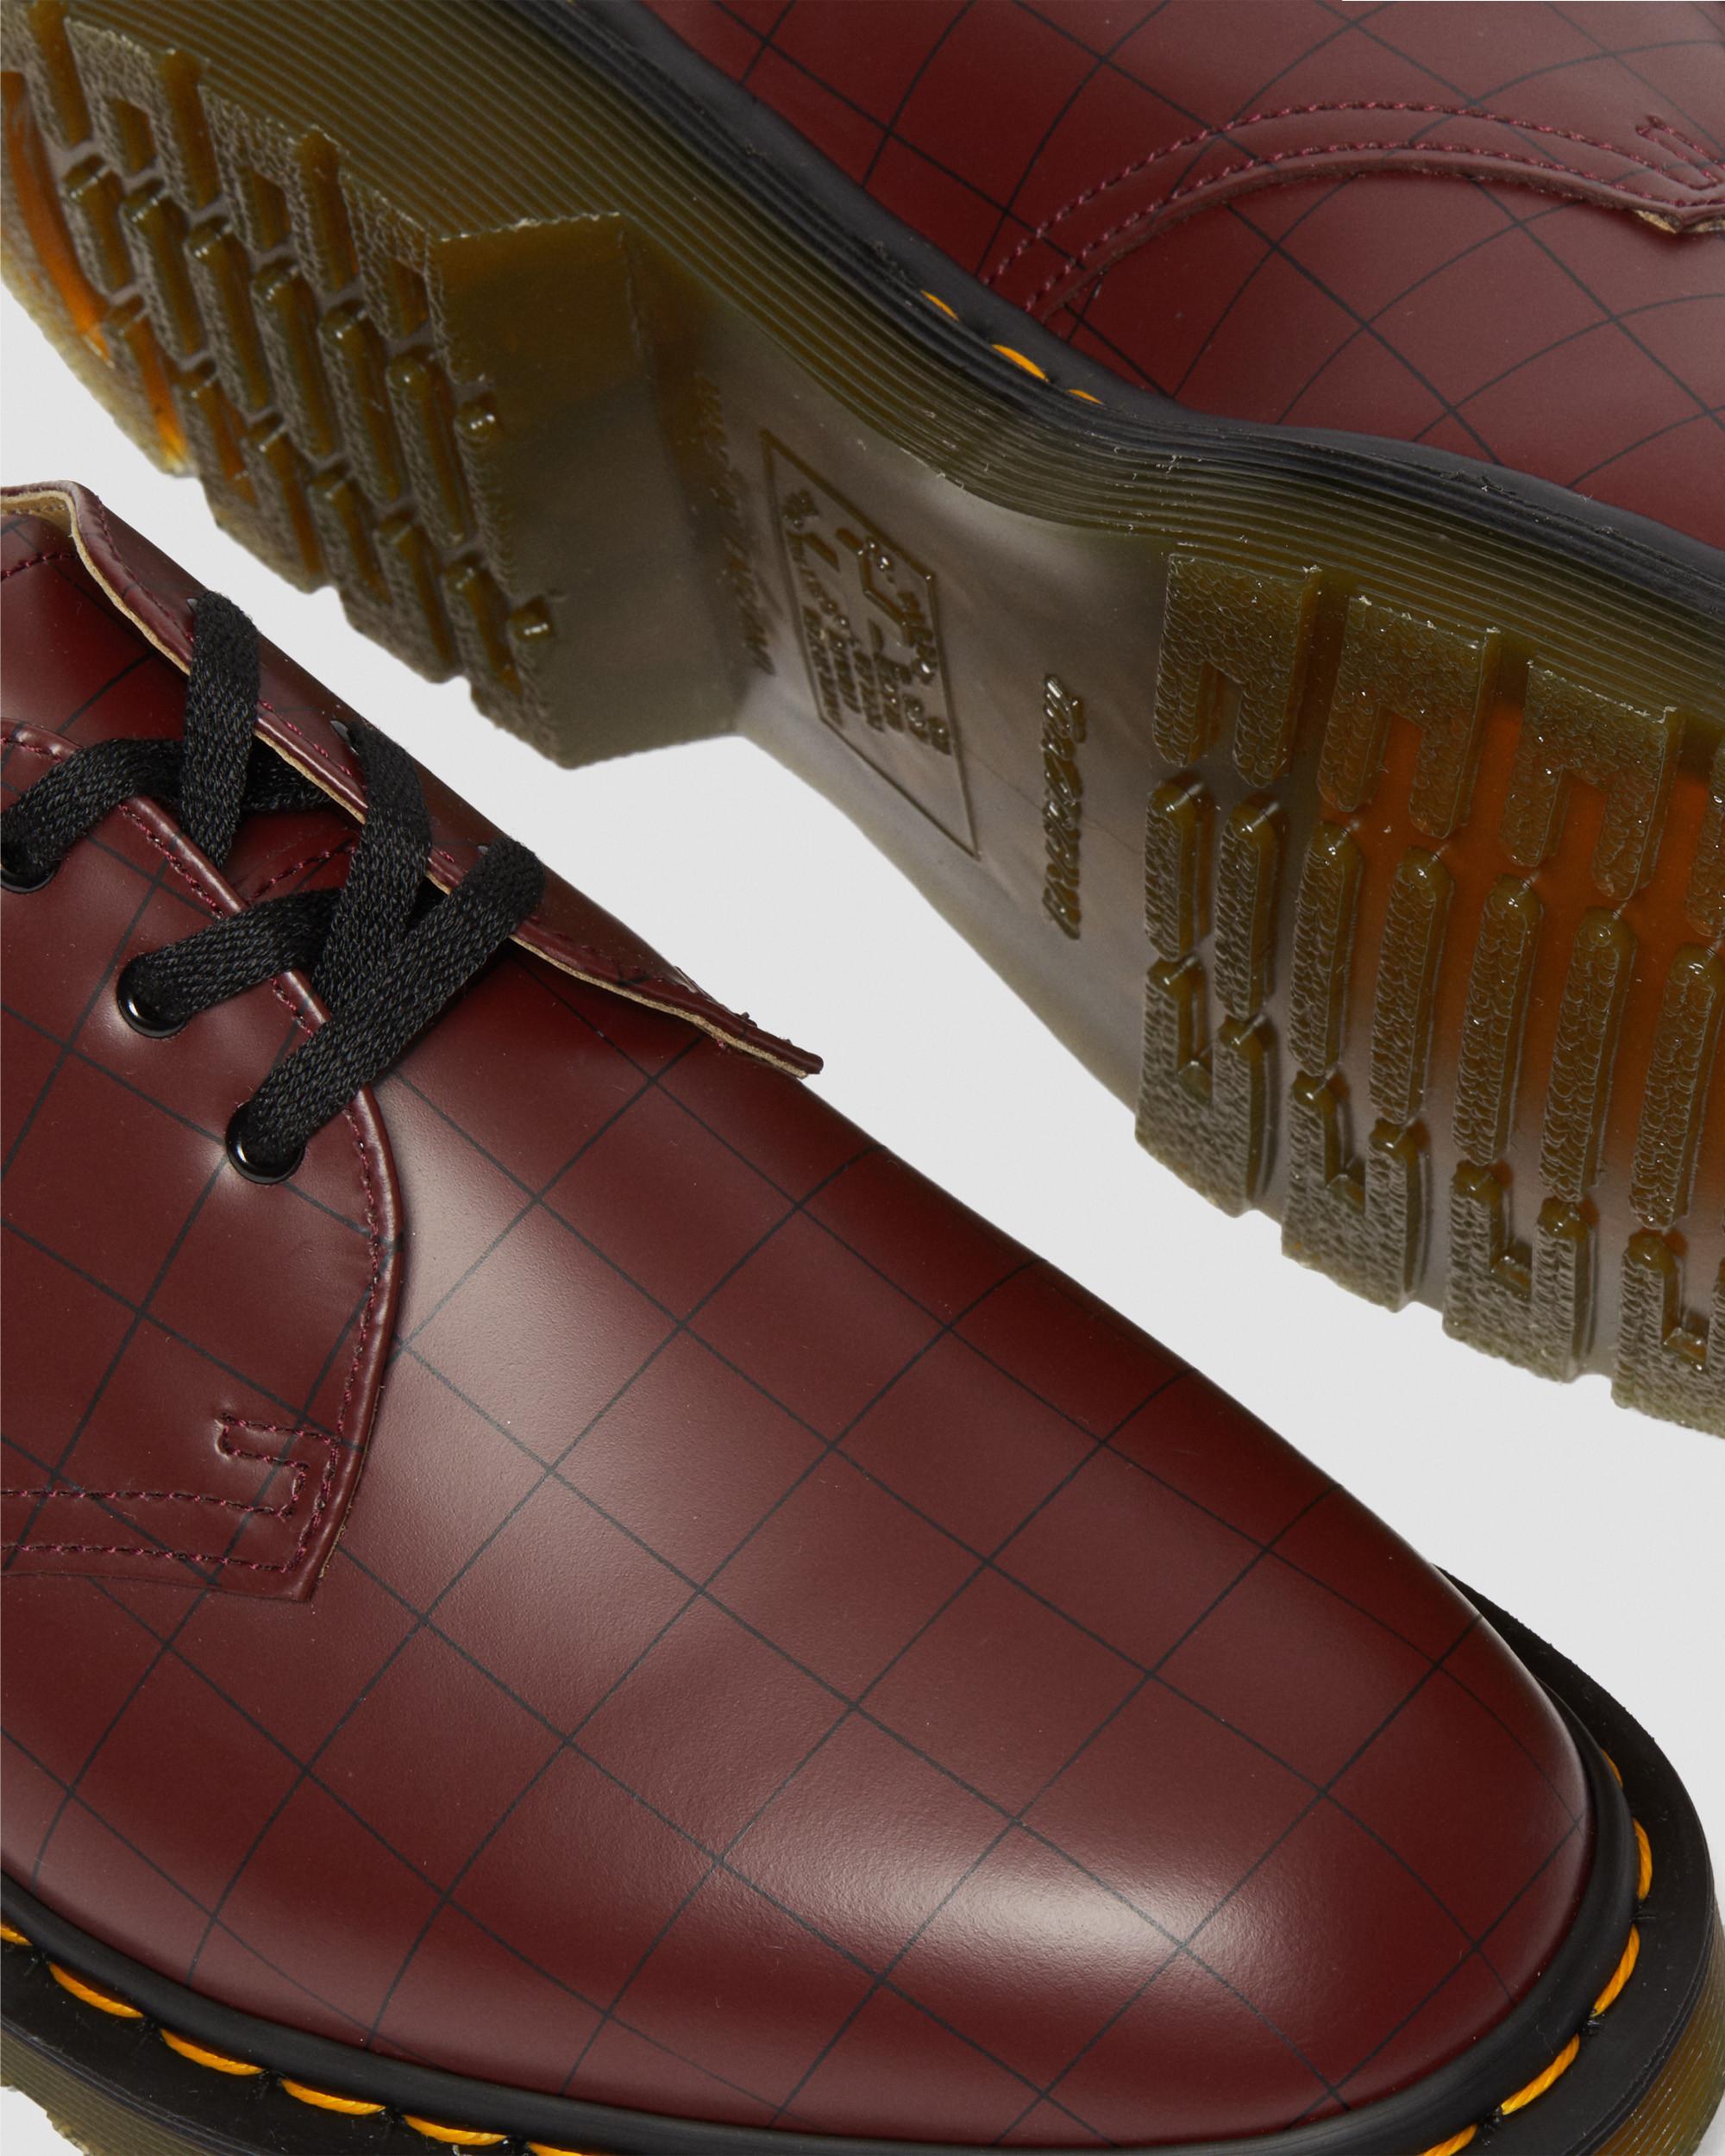 Zapatos 1461 Undercover en piel Smooth in Rojo cereza